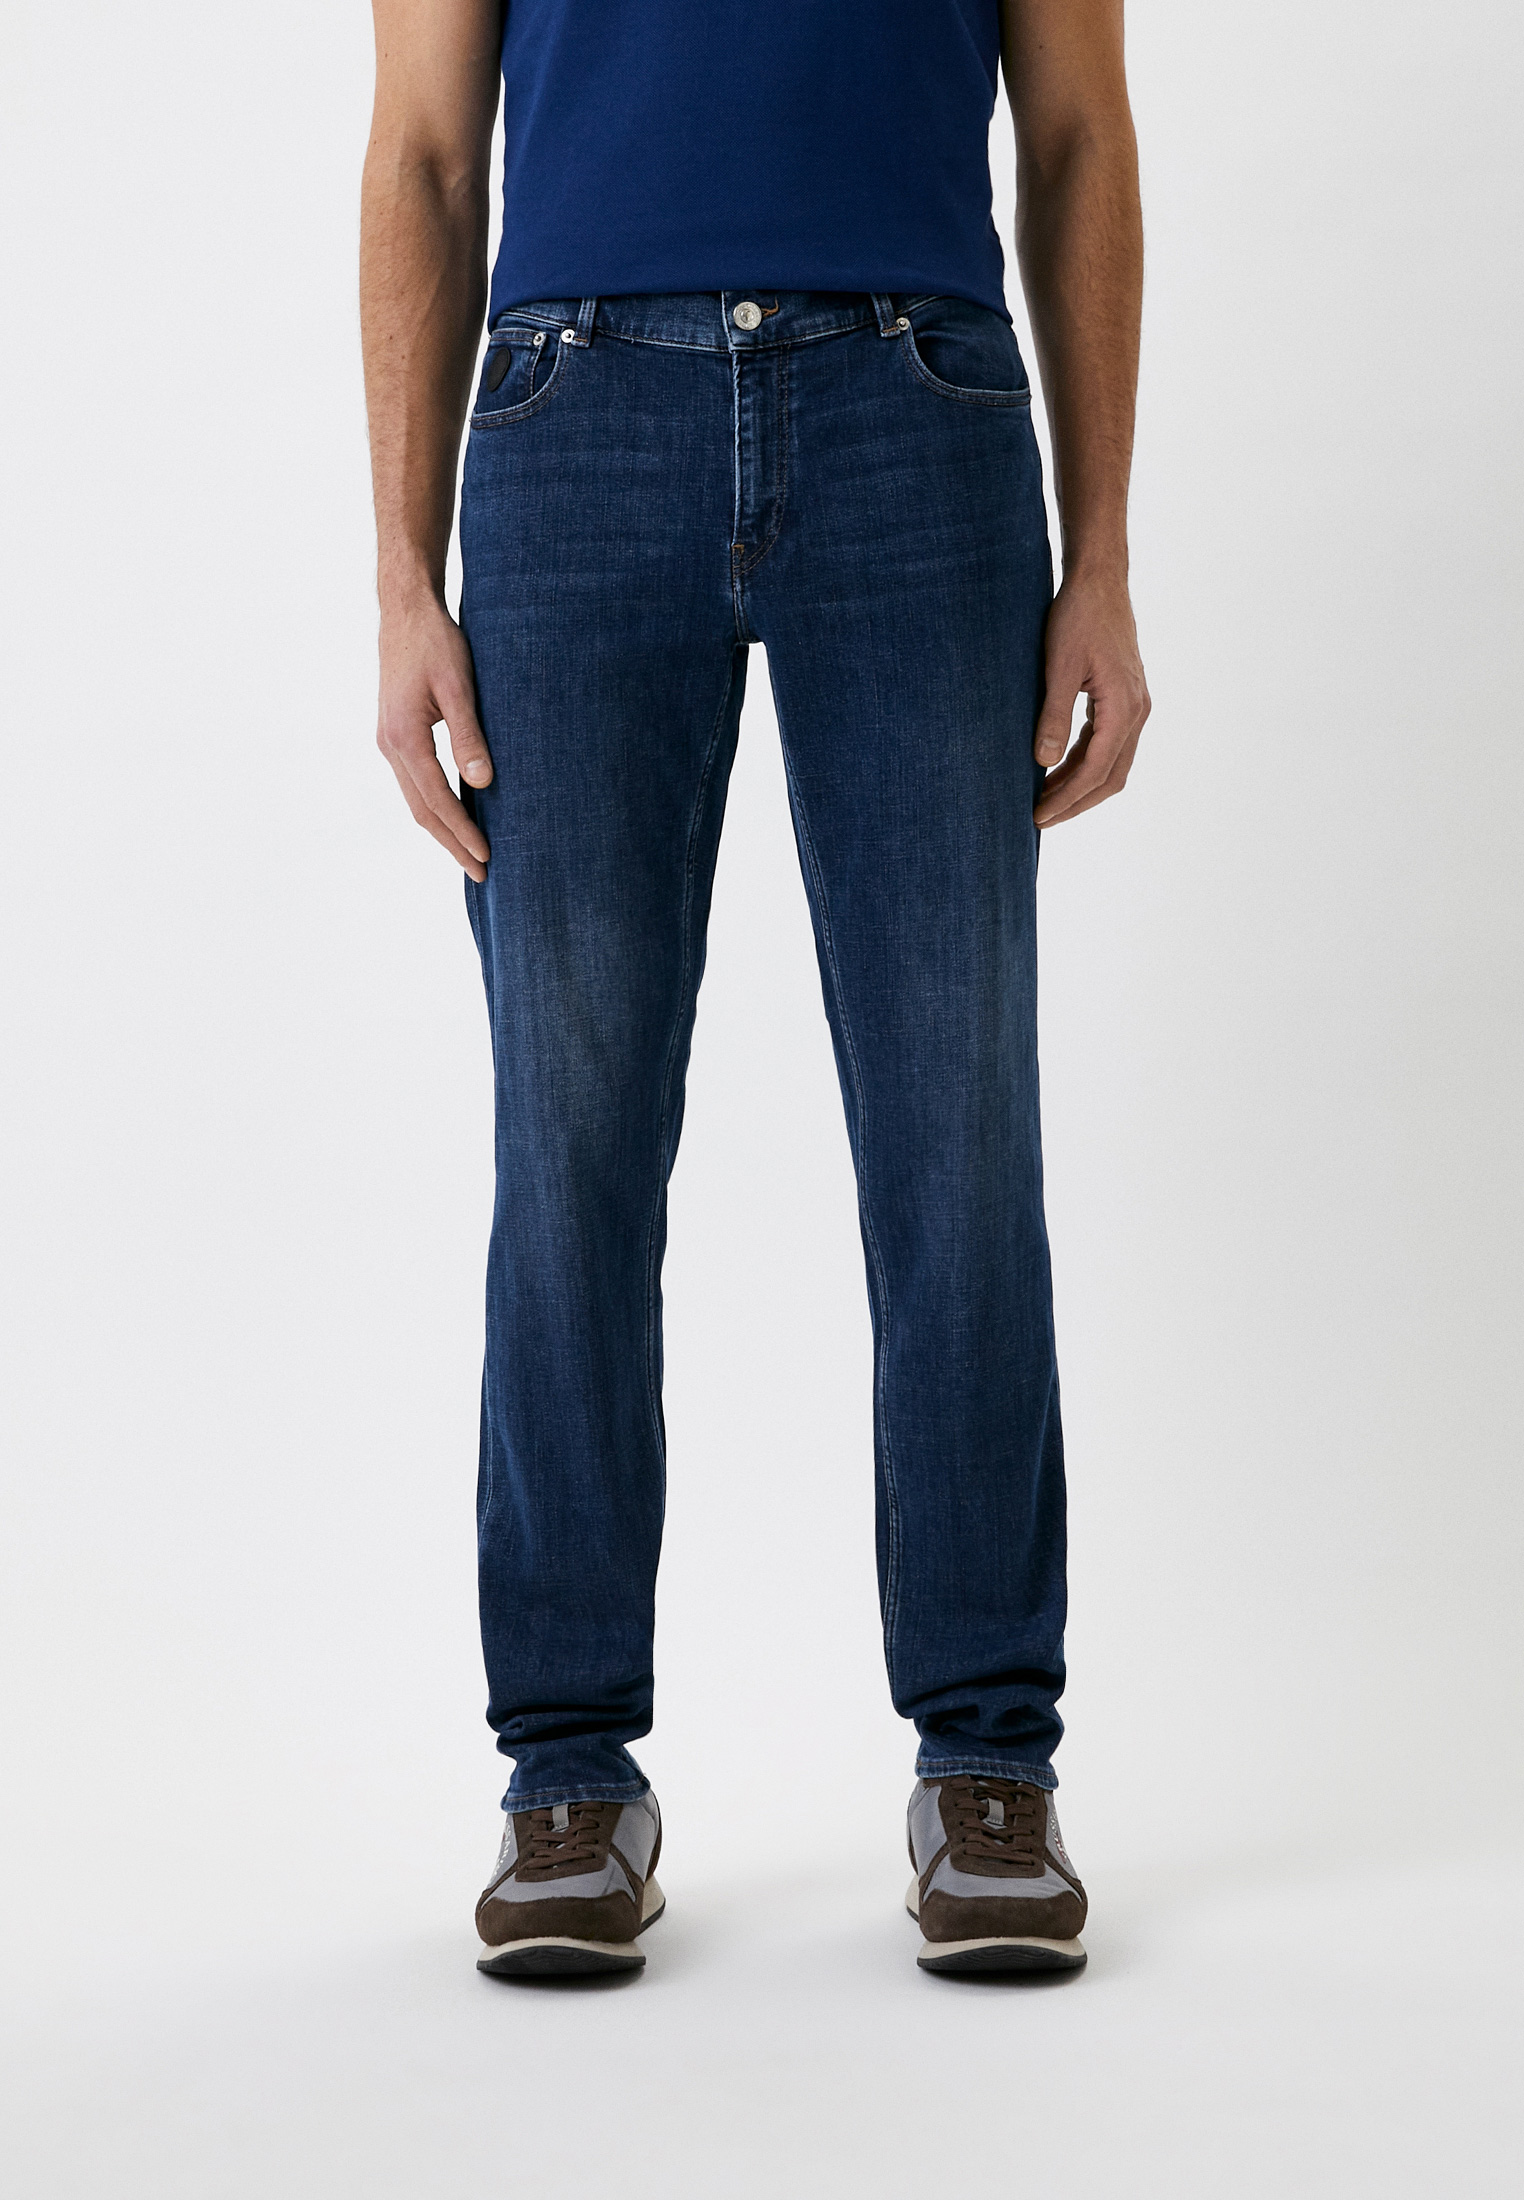 Мужские зауженные джинсы Trussardi (Труссарди) 52J00000-1Y000193: изображение 1